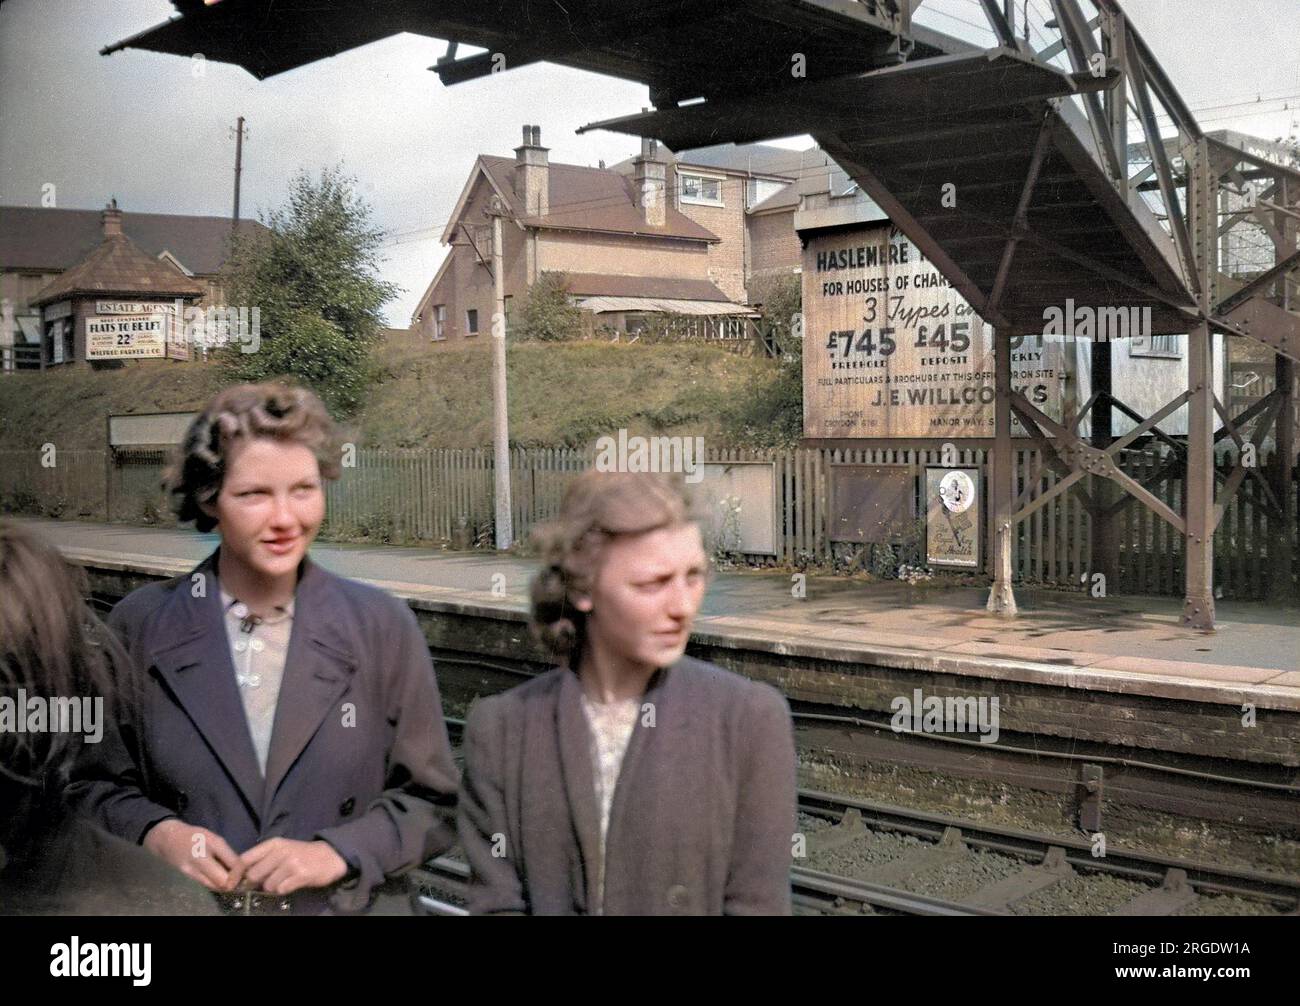 Due giovani donne in una stazione ferroviaria nel sud di Londra. Una pubblicità sulla piattaforma opposta è per proprietà, case di carattere per ú745 freehold. Un altro cartello pubblicizza appartamenti indipendenti da affittare. Foto Stock